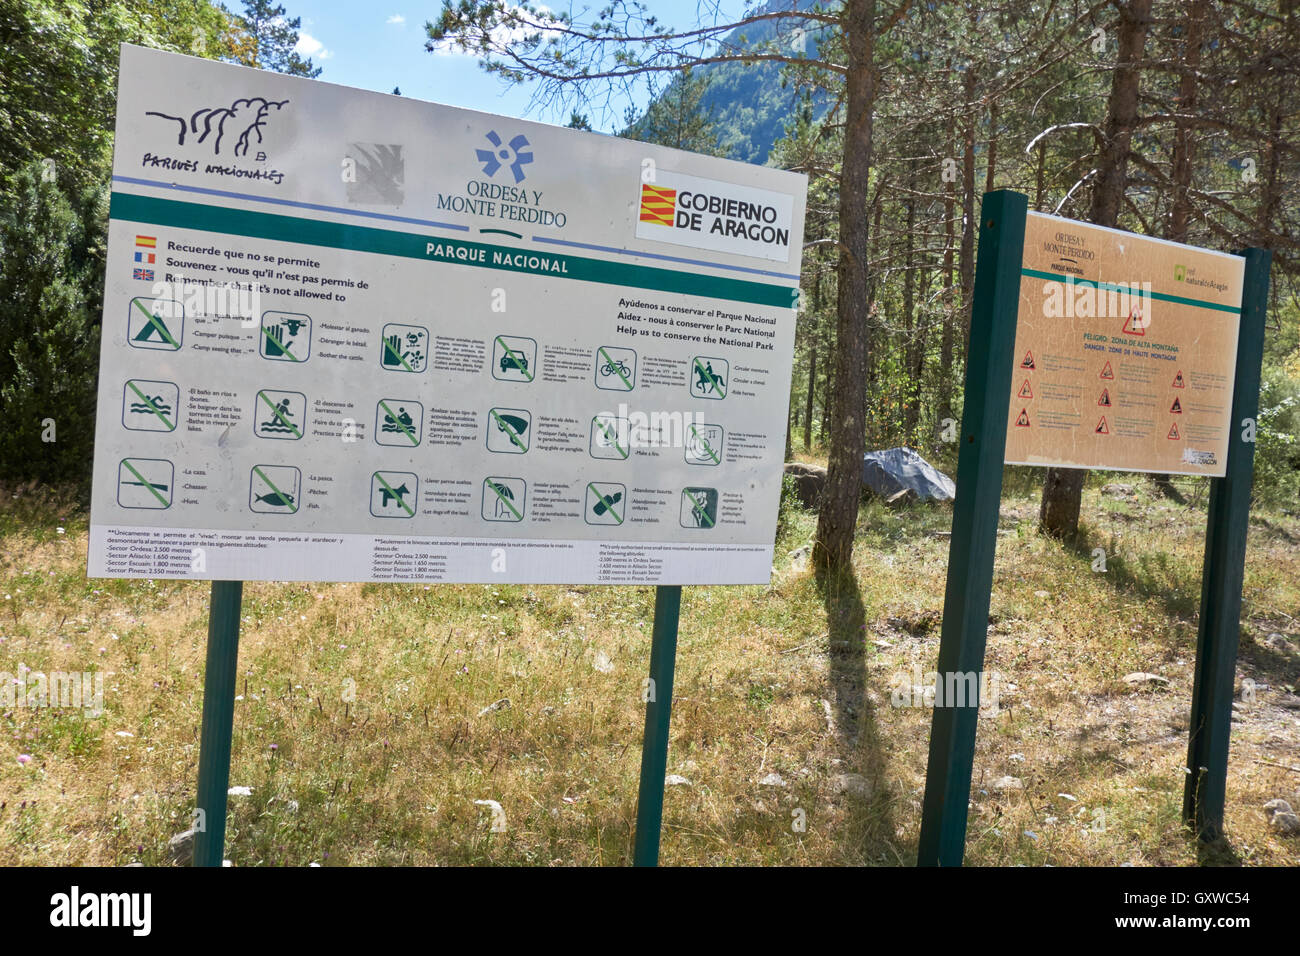 Information panels at "la pradera" in Ordesa y Monte Perdido National Park. Pyrenees. Aragón. Spain. Stock Photo